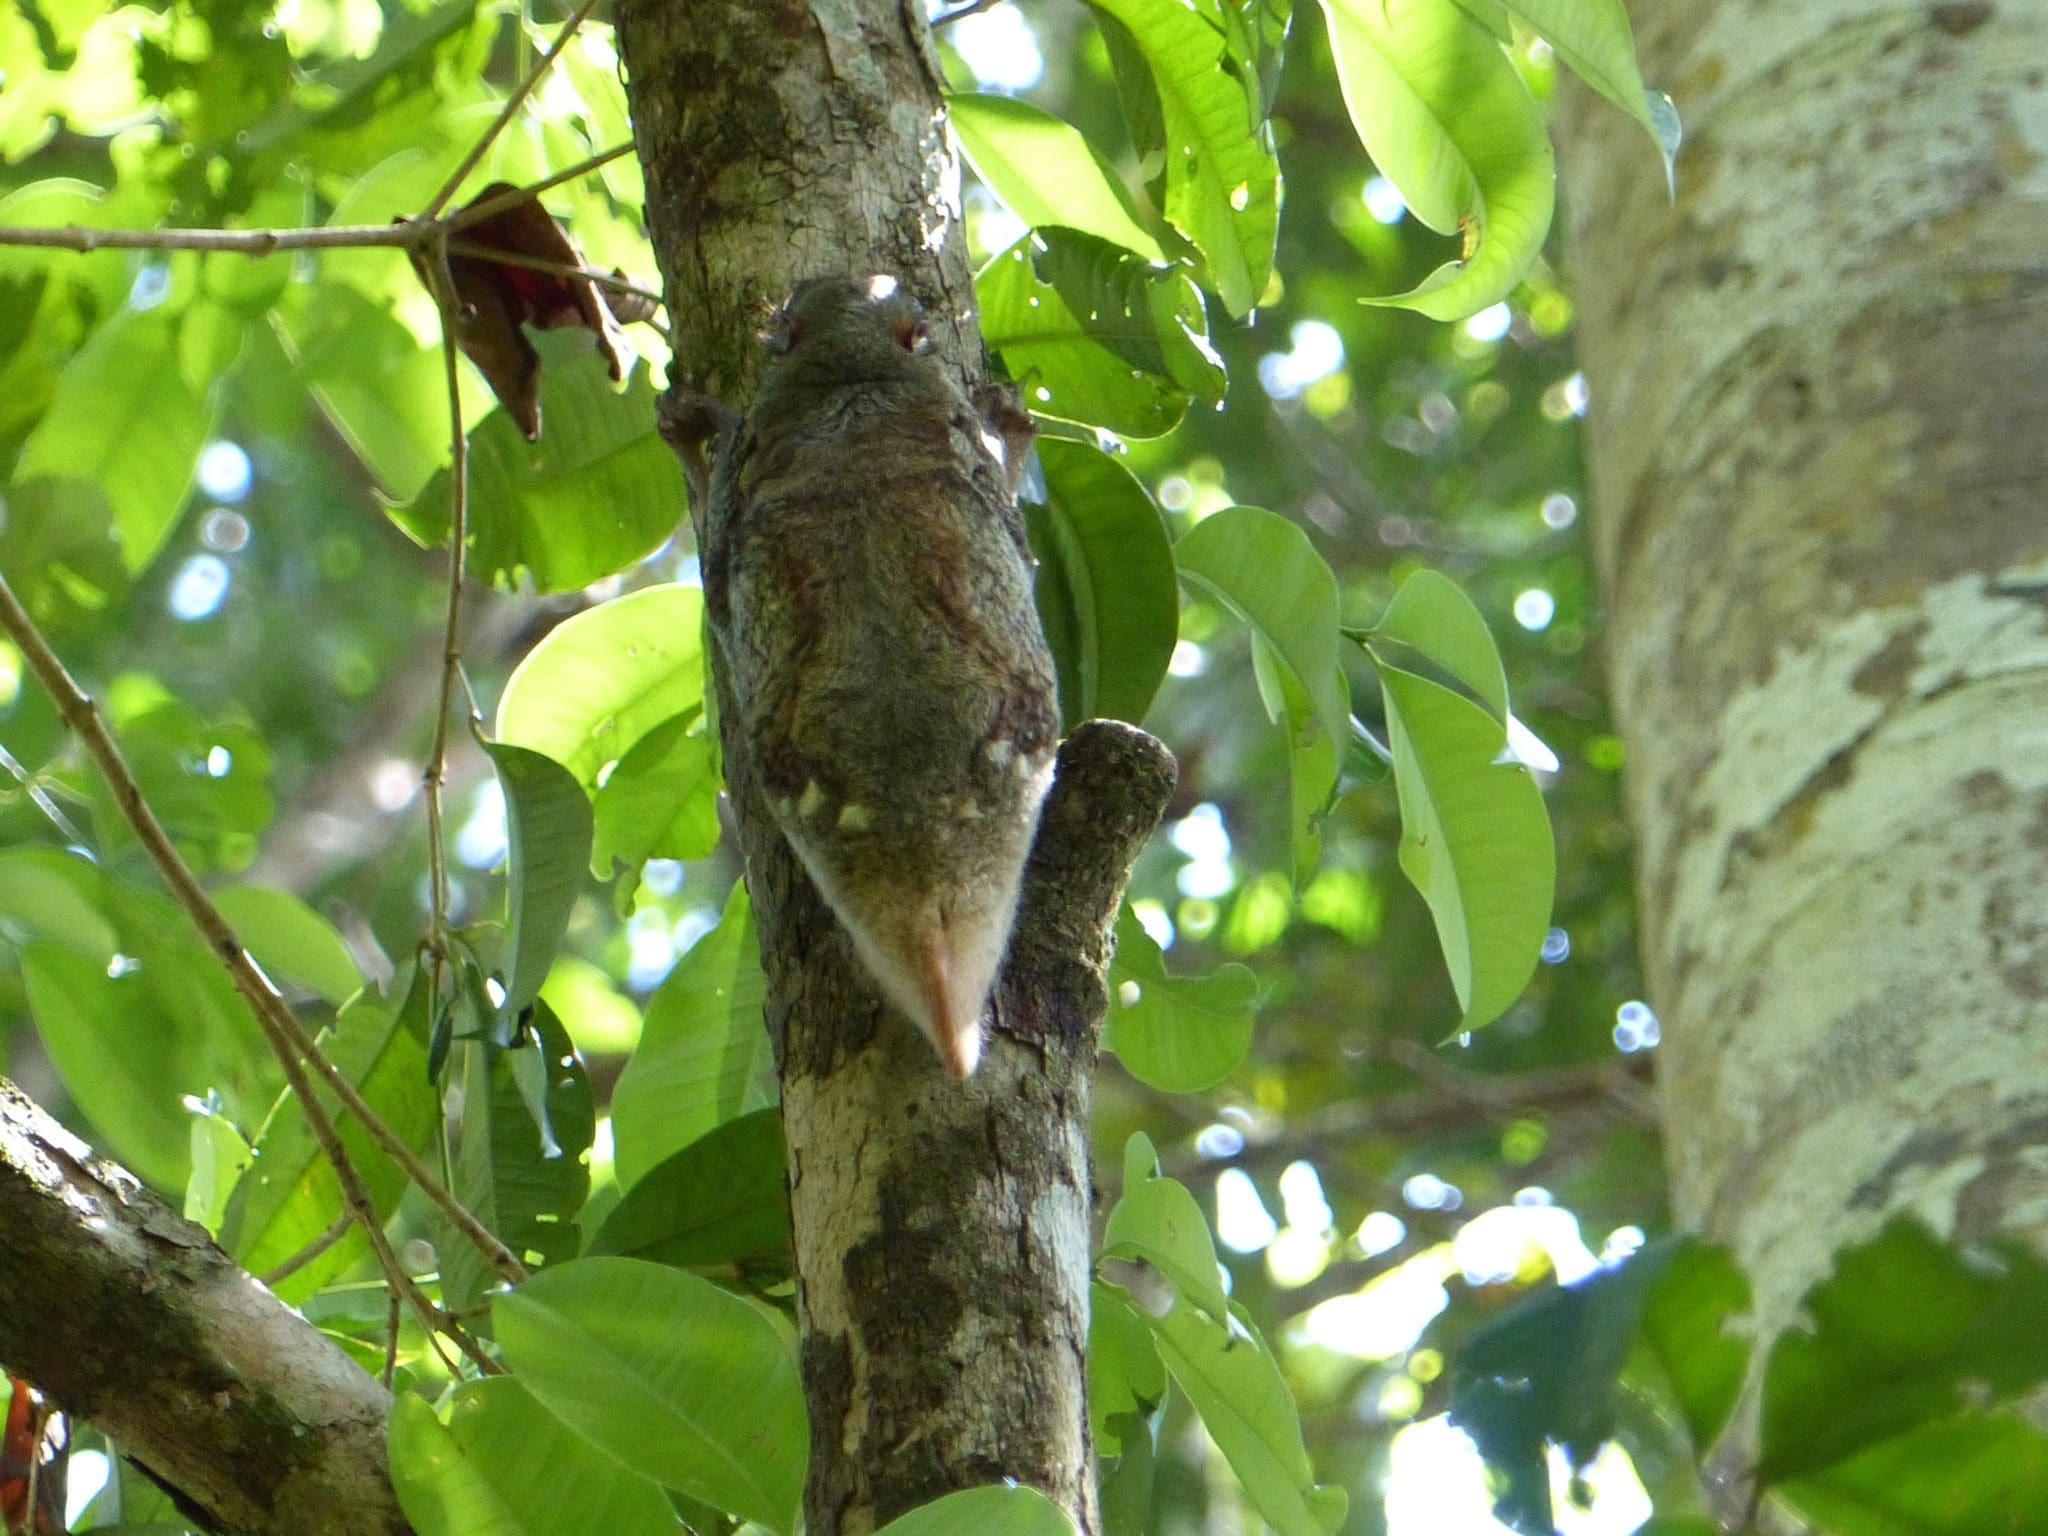 Colugo or Sunda Flying Lemur in Bako National Park